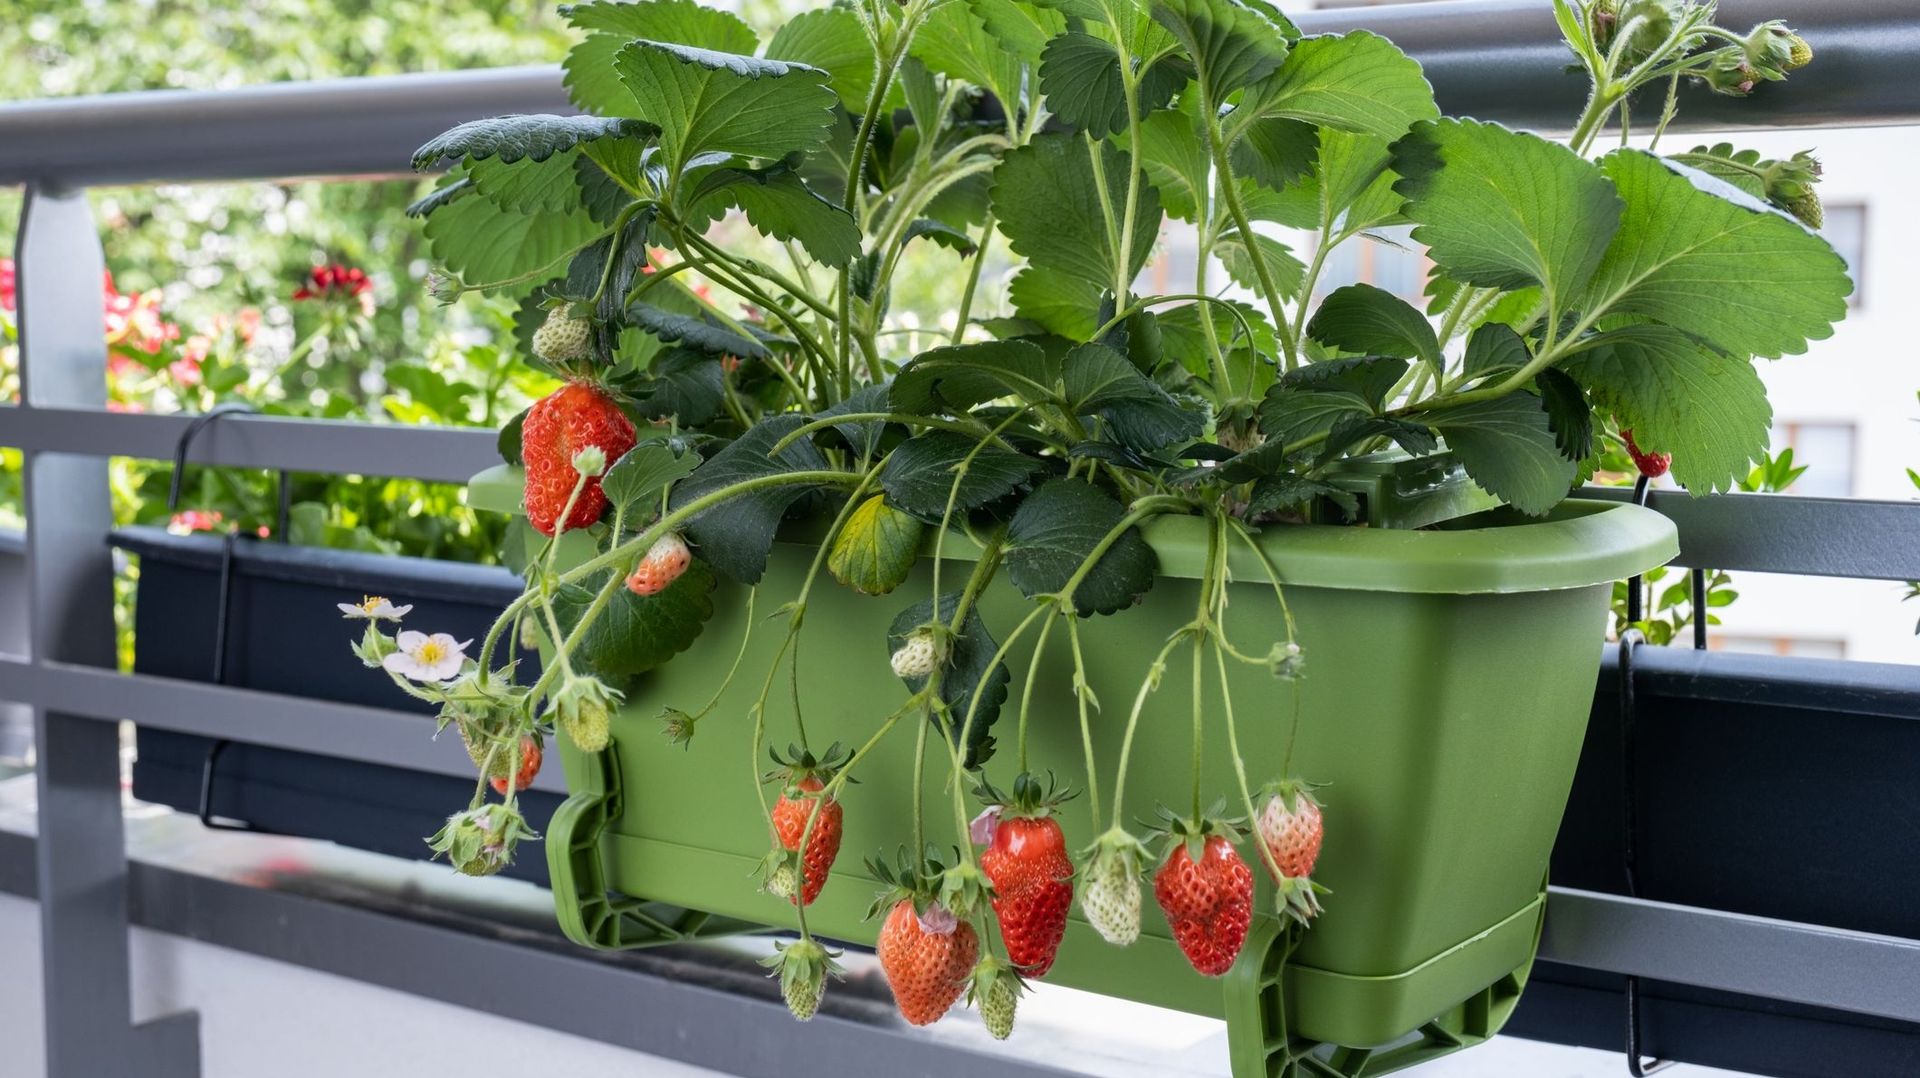 En occupant encore moins de place sur un balcon, une jardinière au large volume peut aussi offrir des récoltes de fraises. Le terreau doit rester humide pour permettre le développement de fruits de bon calibre et bien juteux.